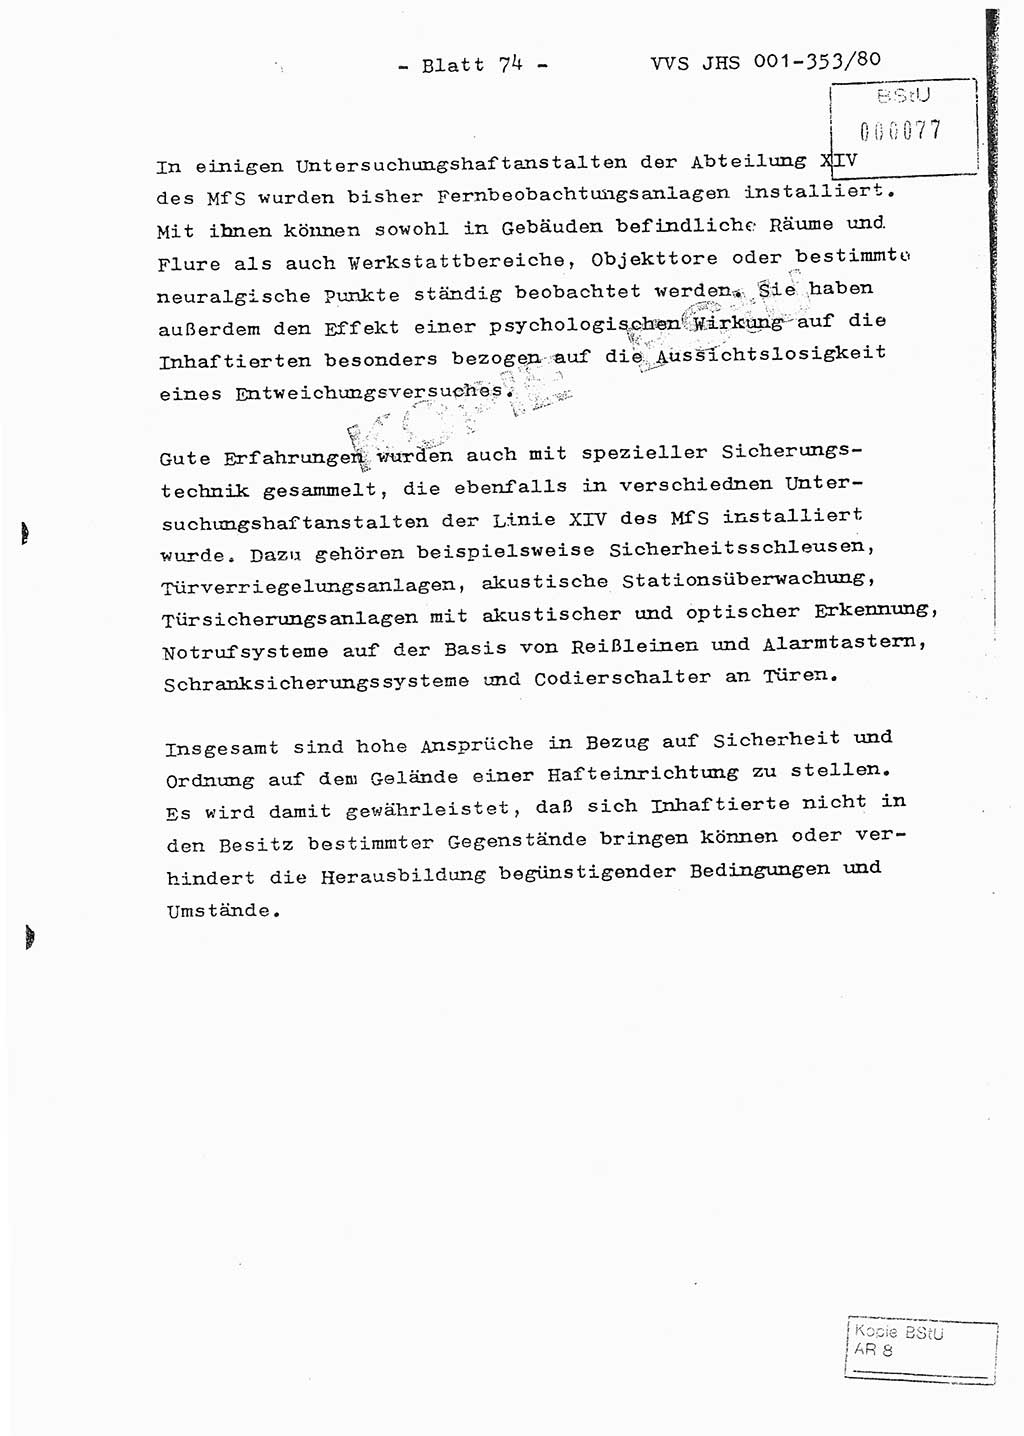 Diplomarbeit Hauptmann Joachim Klaumünzner (Abt. ⅩⅣ), Ministerium für Staatssicherheit (MfS) [Deutsche Demokratische Republik (DDR)], Juristische Hochschule (JHS), Vertrauliche Verschlußsache (VVS) o001-353/80, Potsdam 1980, Blatt 74 (Dipl.-Arb. MfS DDR JHS VVS o001-353/80 1980, Bl. 74)